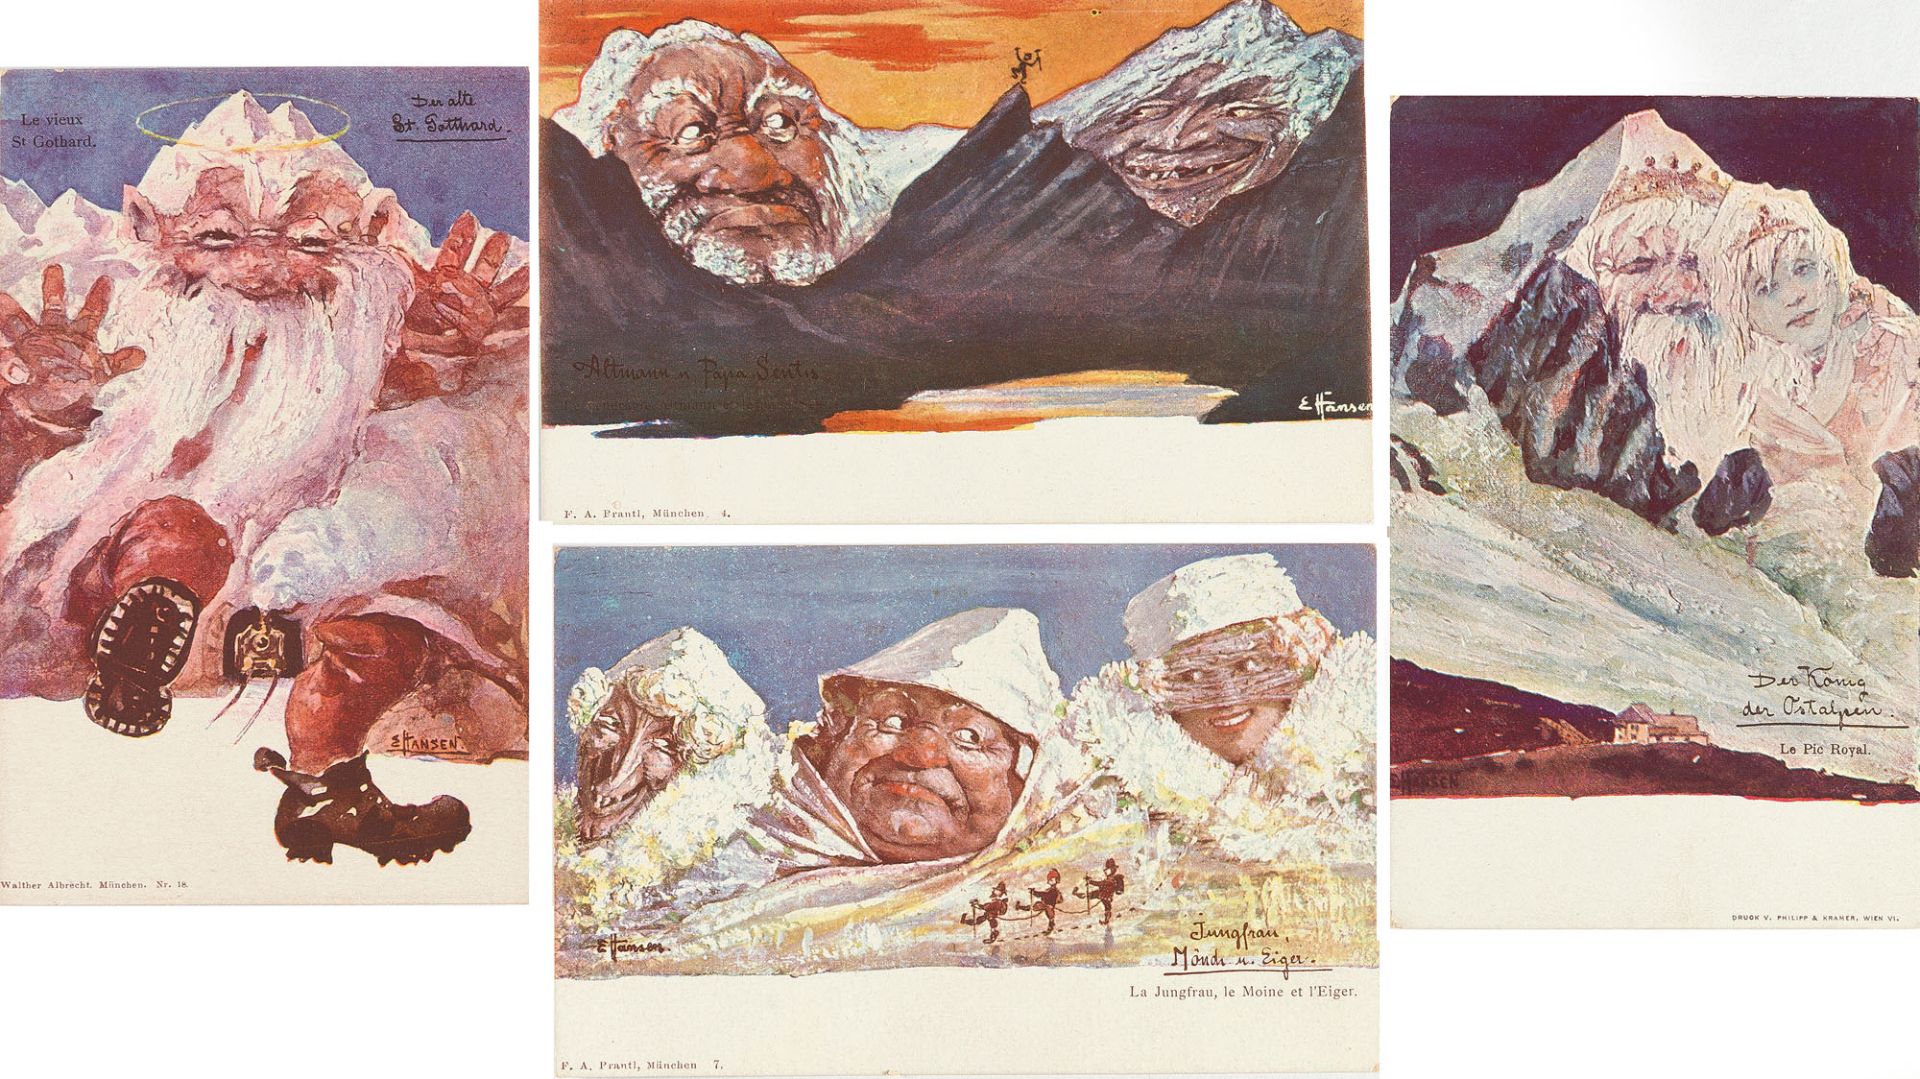 EMIL NOLDE
1867 Nolde - Seebüll 1956

Folge von 30 Bll.: Bergpostkarten.
1896
Farbiges Klischee